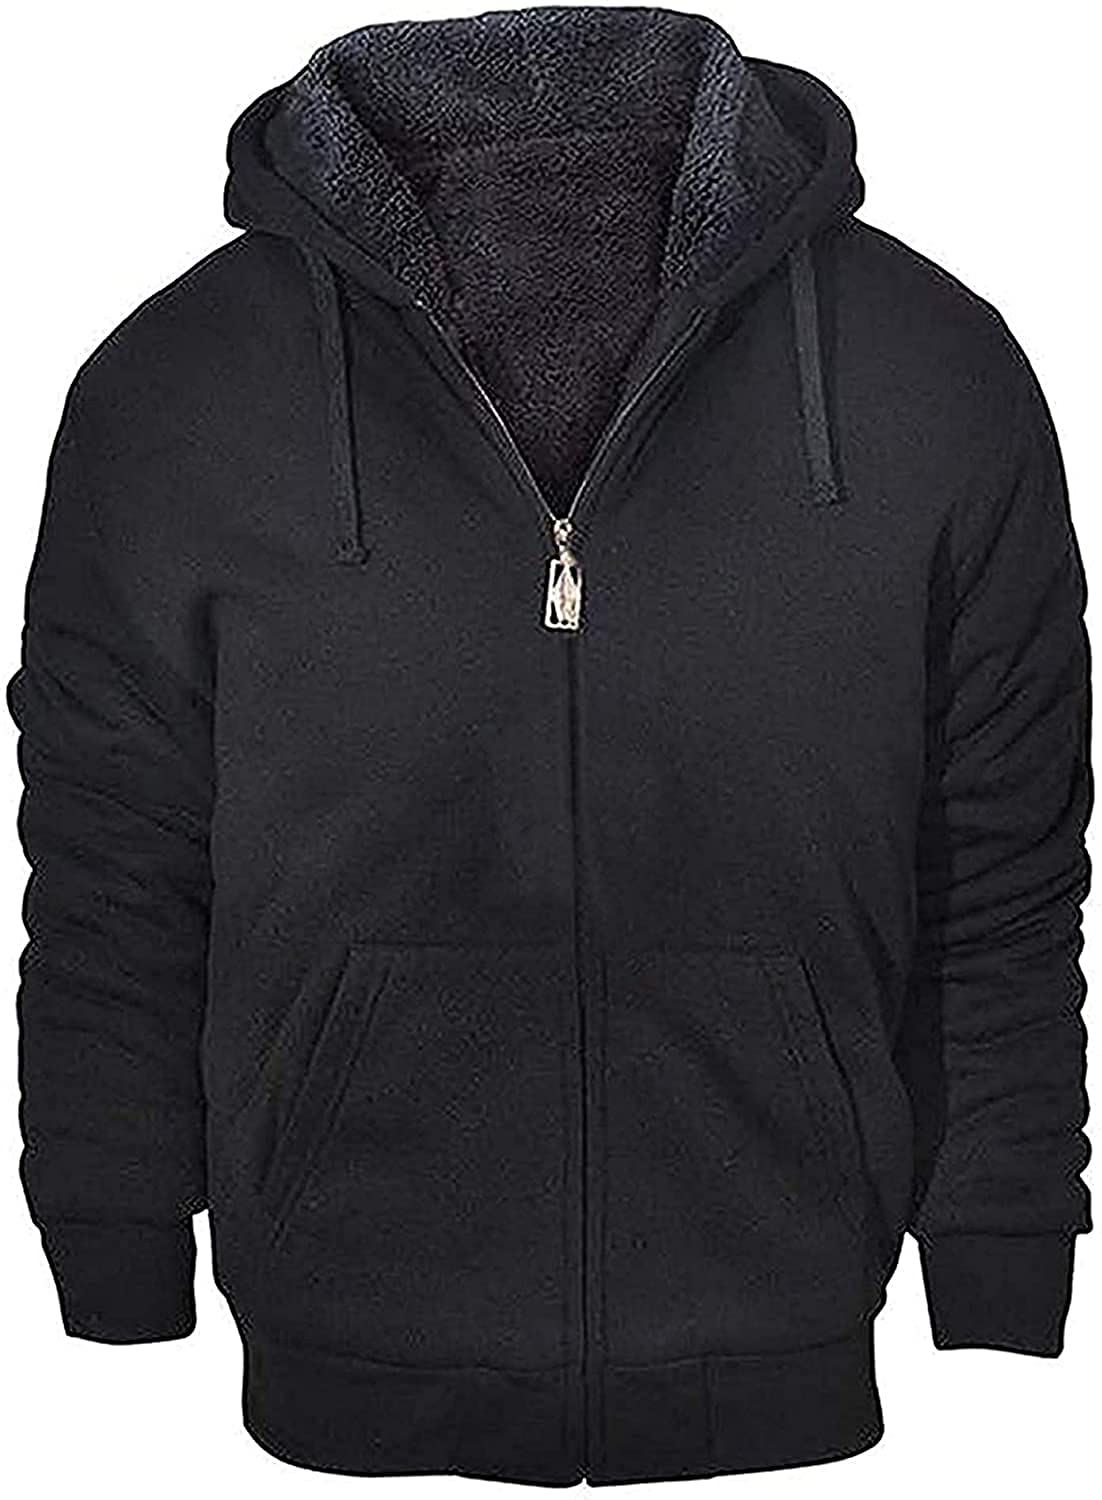 Full Zip Up Thick GEEK LIGHTING Hoodies for Women Sherpa Lined Winter Fleece Sweatshirt 